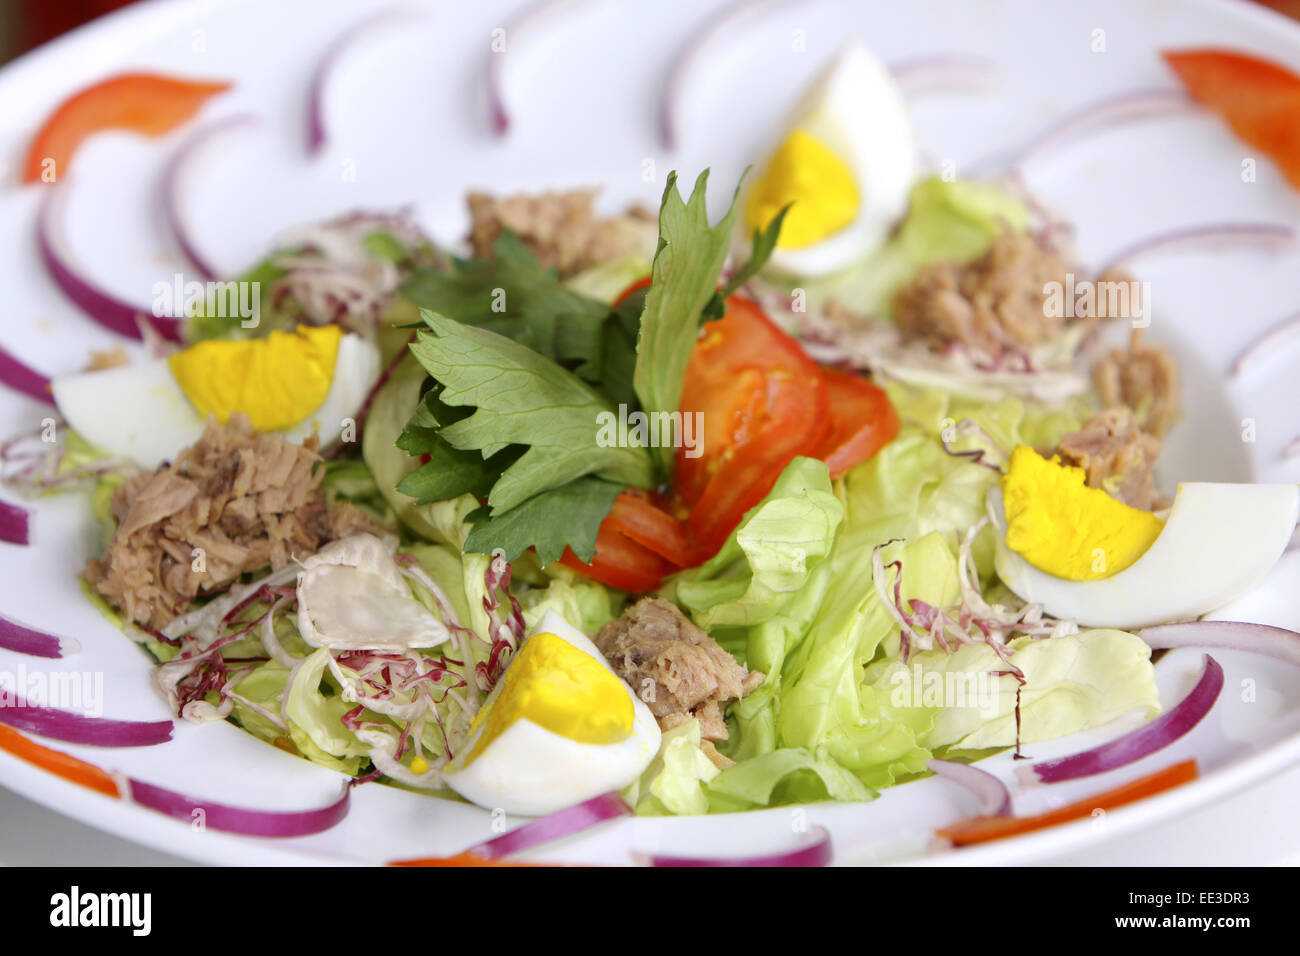 Ein Teller gemischter Salat, Speise, vegetarisch, Salat, Salatblaetter, Thunfisch, Ei, gekocht, Ernaehrung, gesund, gesundheitsb Stock Photo